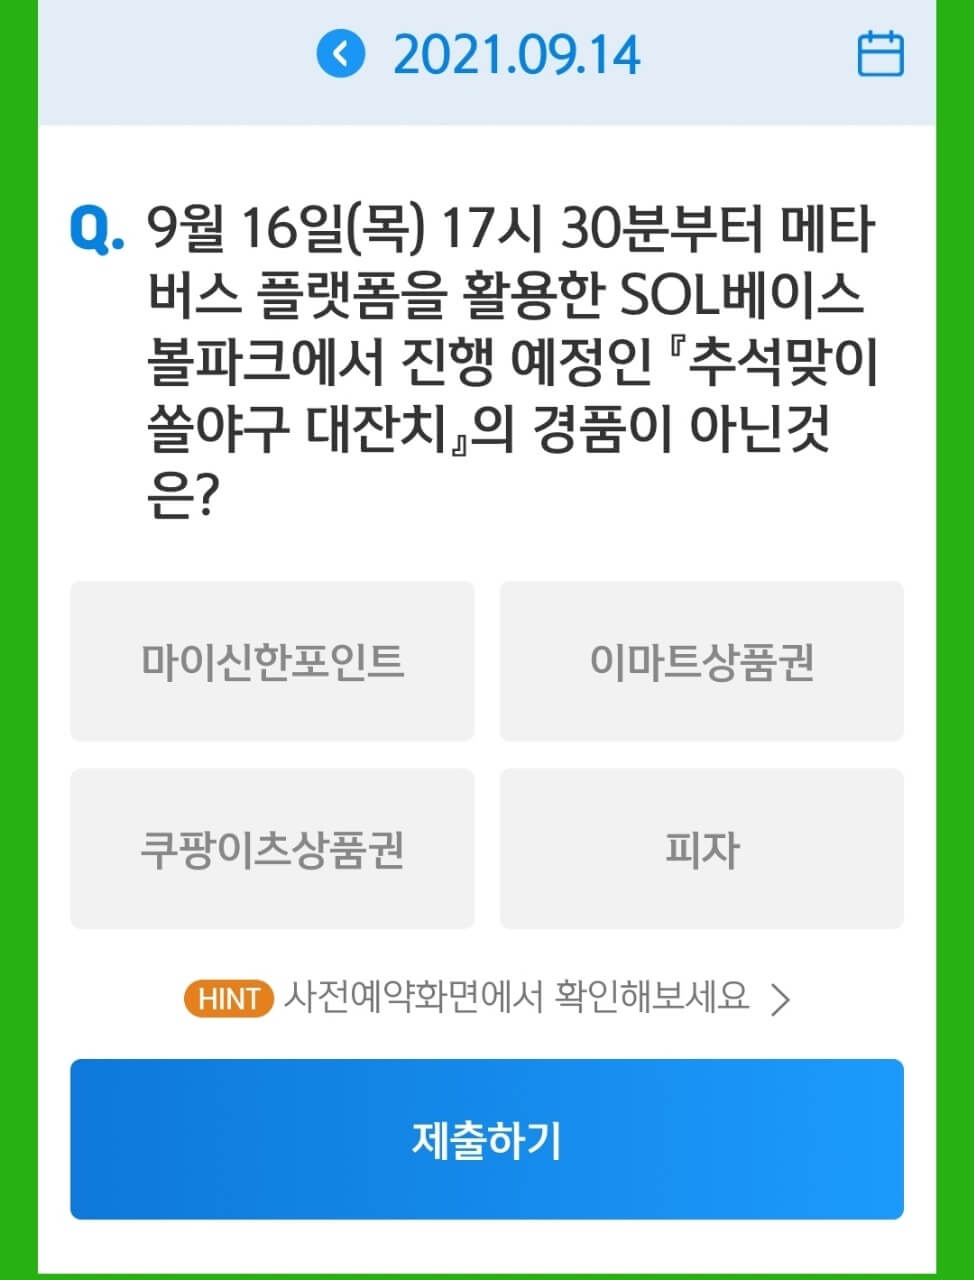 9월 14일 앱테크 신한 쏠야구 퀴즈정답 